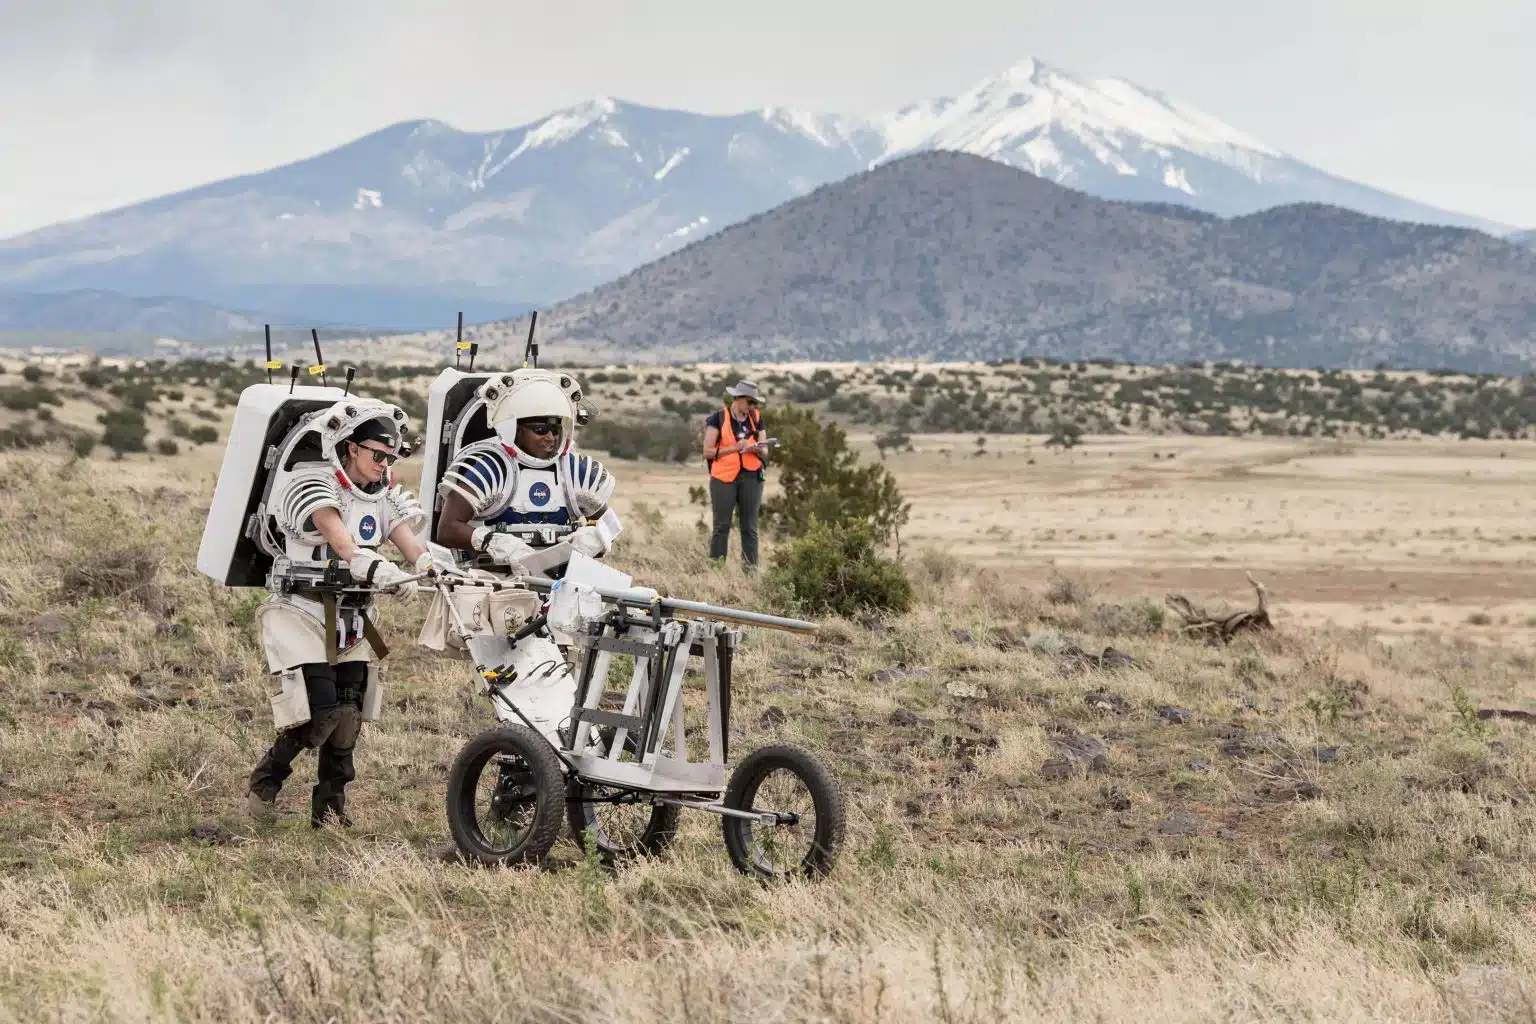 האסטרונאוטים קייט רובינס ואנדרה דגלס דוחפים עגלת כלים עמוסה בכלי ירח בשדה הוולקני סן פרנסיסקו צפונית לפלגסטאף, אריזונה, כשהם מתרגלים פעילויות של הליכות ירח למשימת ארטמיס 3.
קרדיט: Credit: NASA/Josh Valcarcel